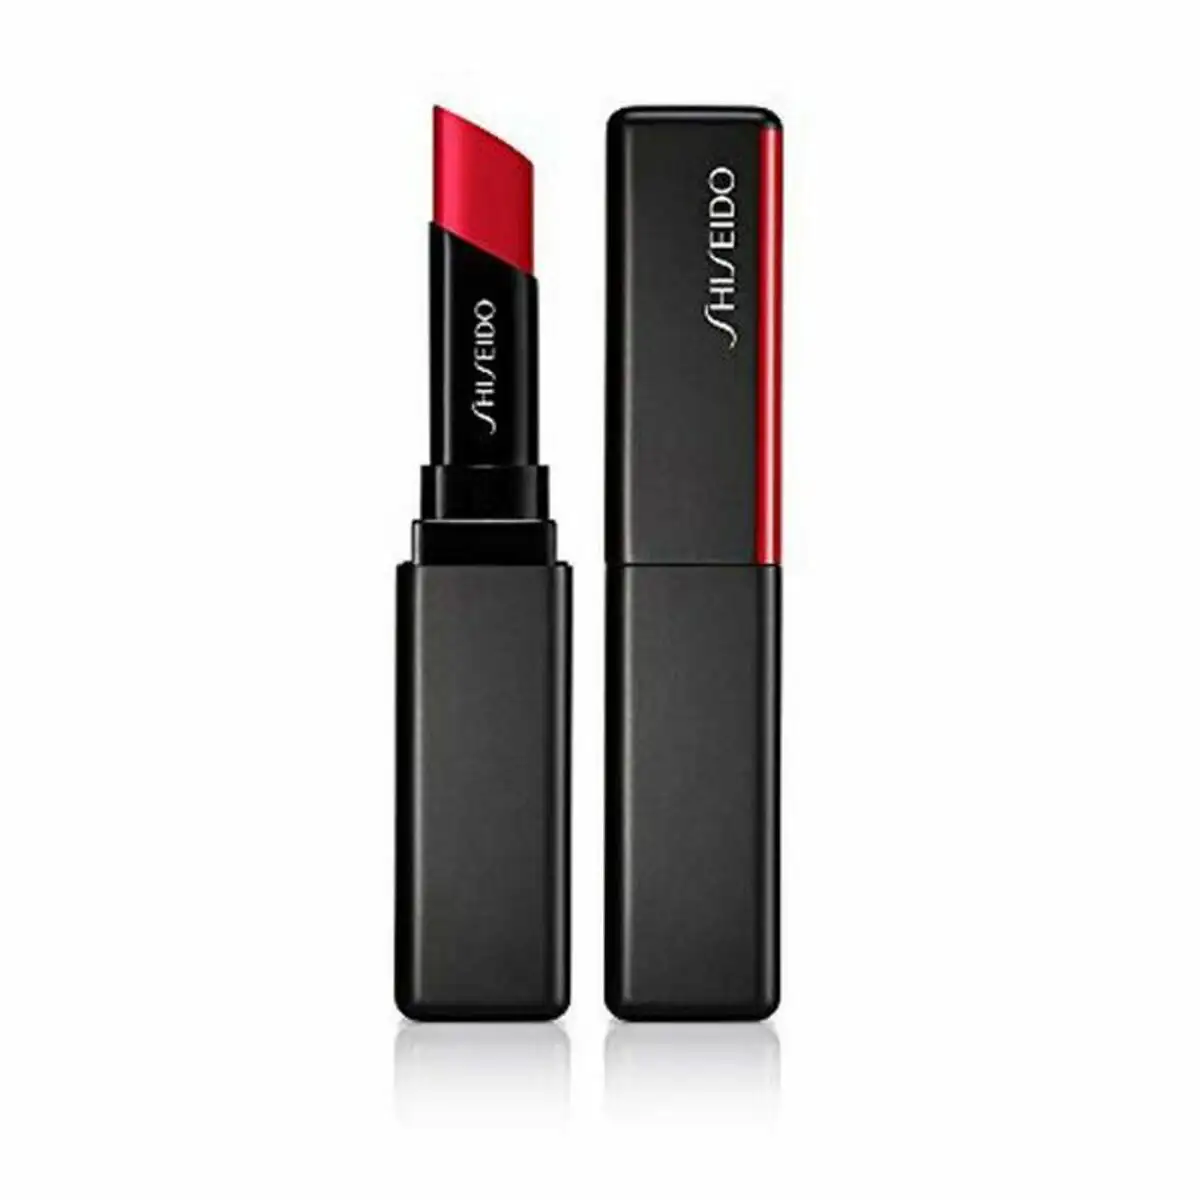 Rouge a levres shiseido lip visionairy gel no 221_8377. DIAYTAR SENEGAL - Votre Destination pour un Shopping Réfléchi. Découvrez notre gamme variée et choisissez des produits qui correspondent à vos valeurs et à votre style de vie.